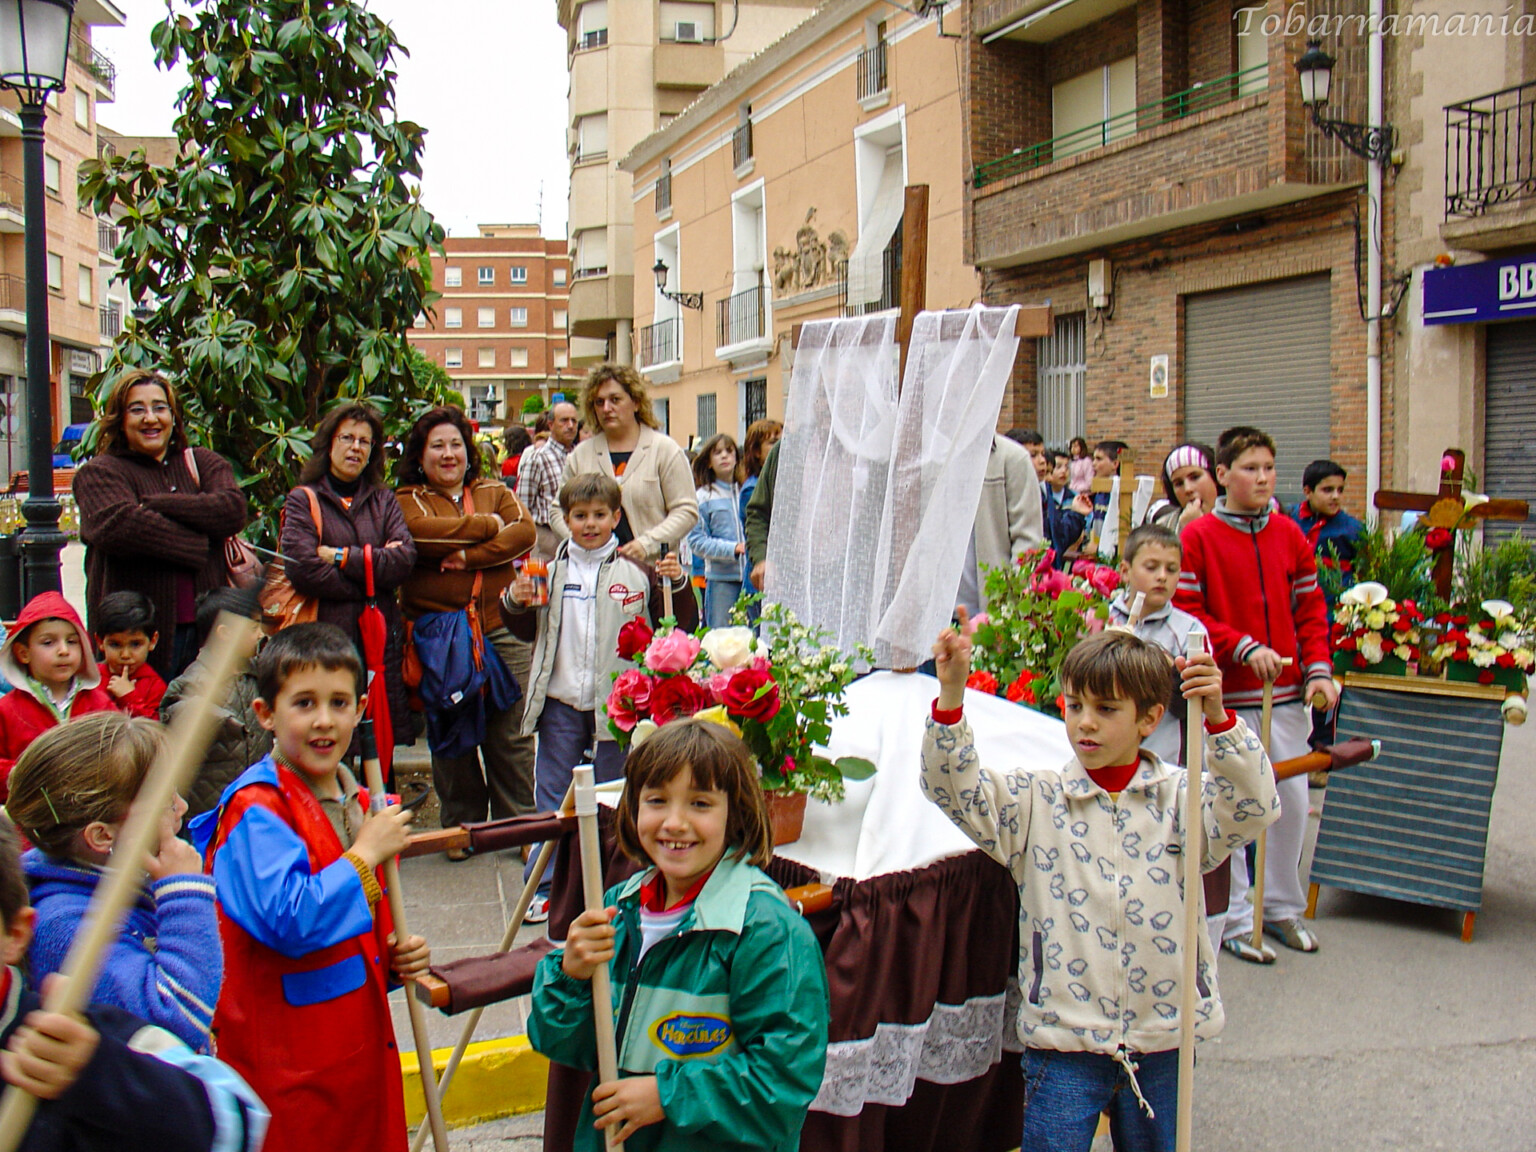 Fiesta de las Cruces de Mayo en Tobarra año 2006